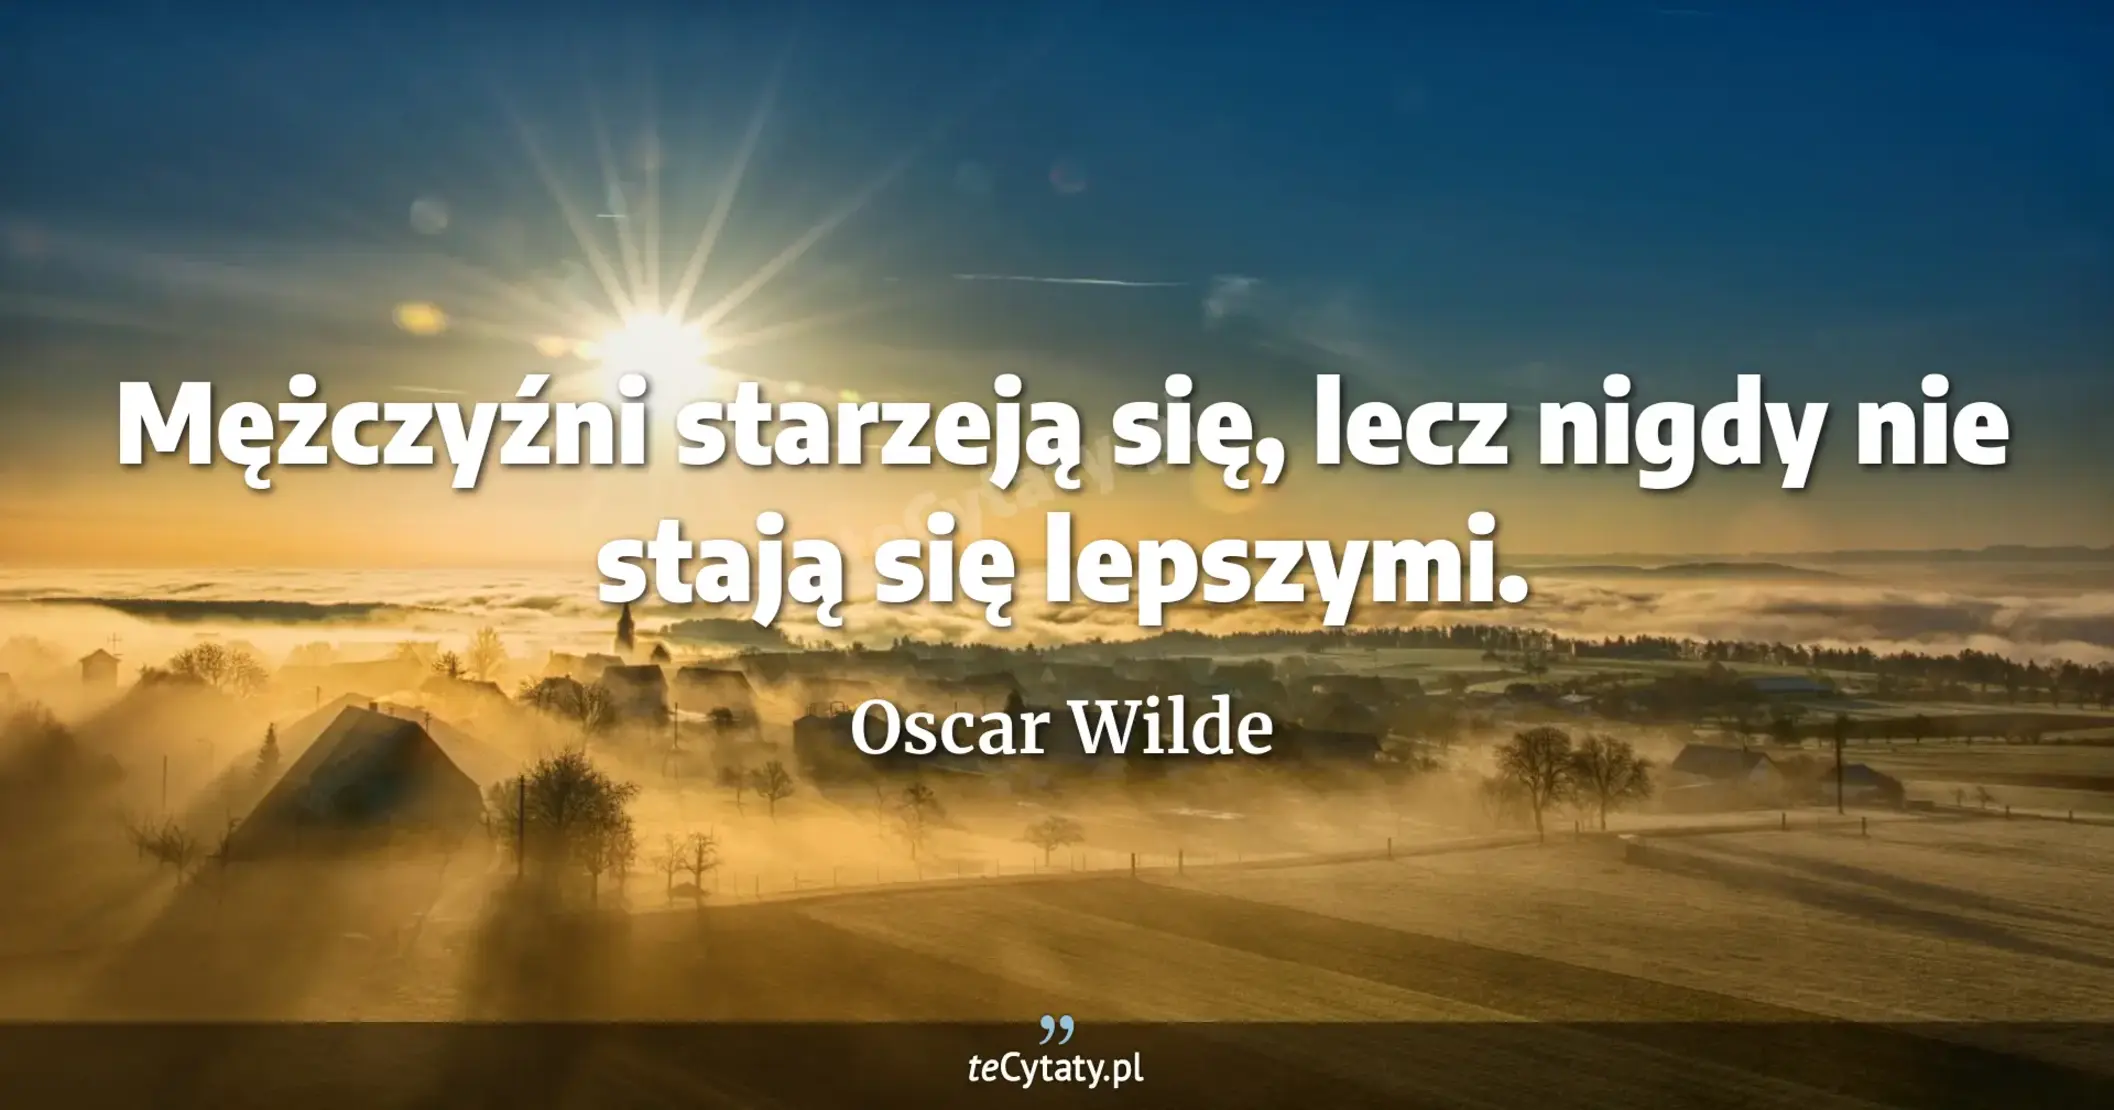 Mężczyźni starzeją się, lecz nigdy nie stają się lepszymi. - Oscar Wilde